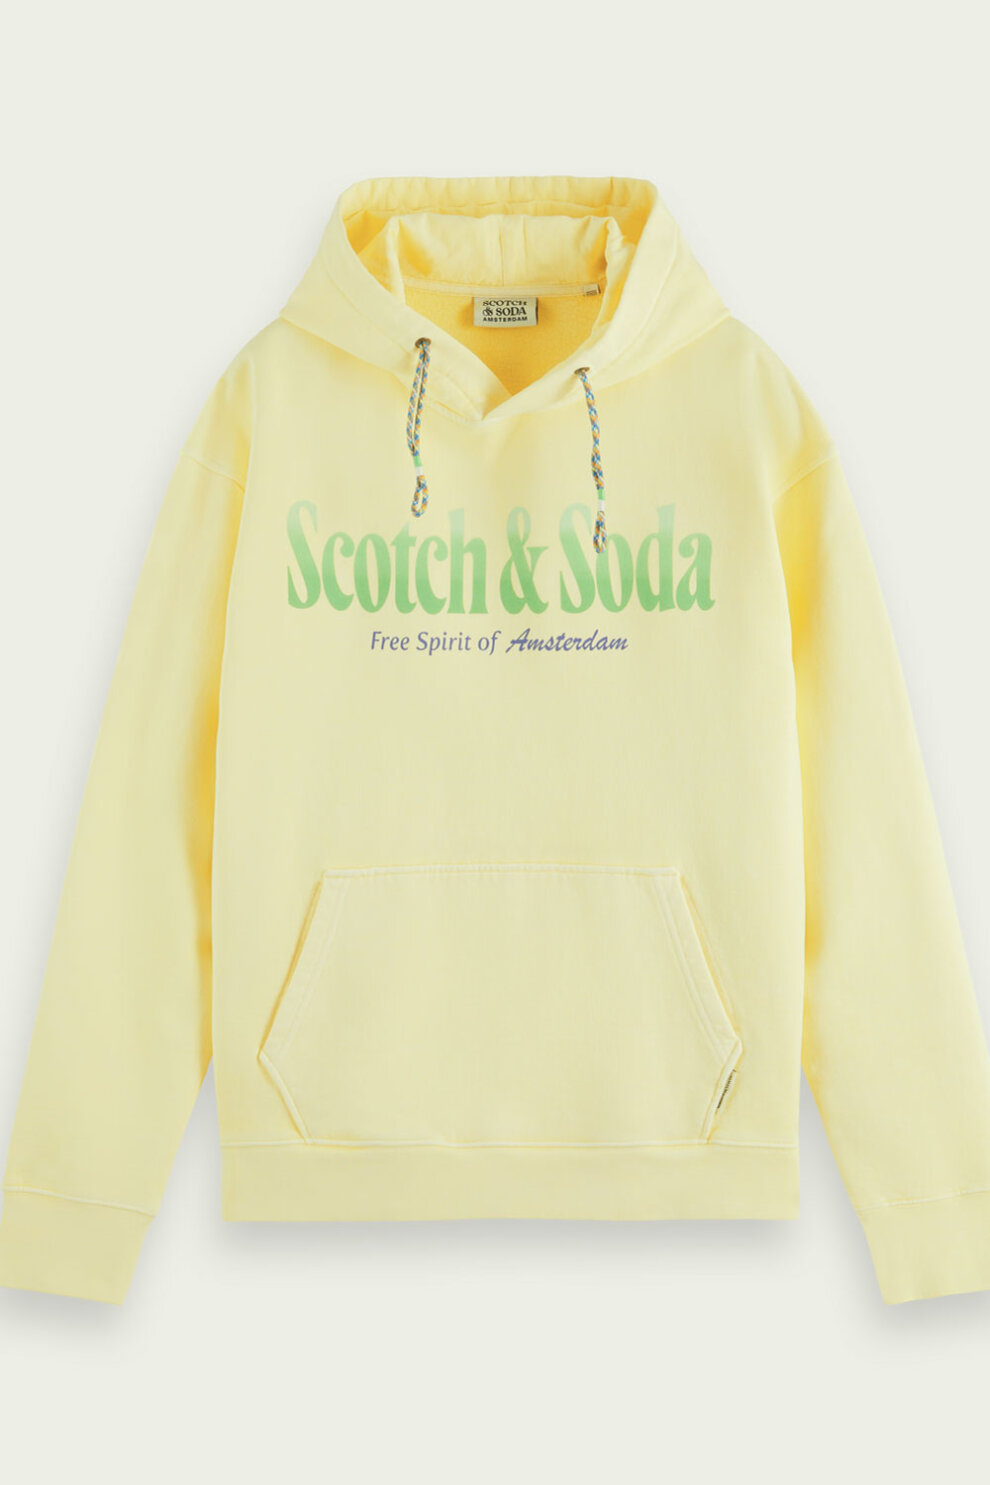 Scotch & Soda hoodie